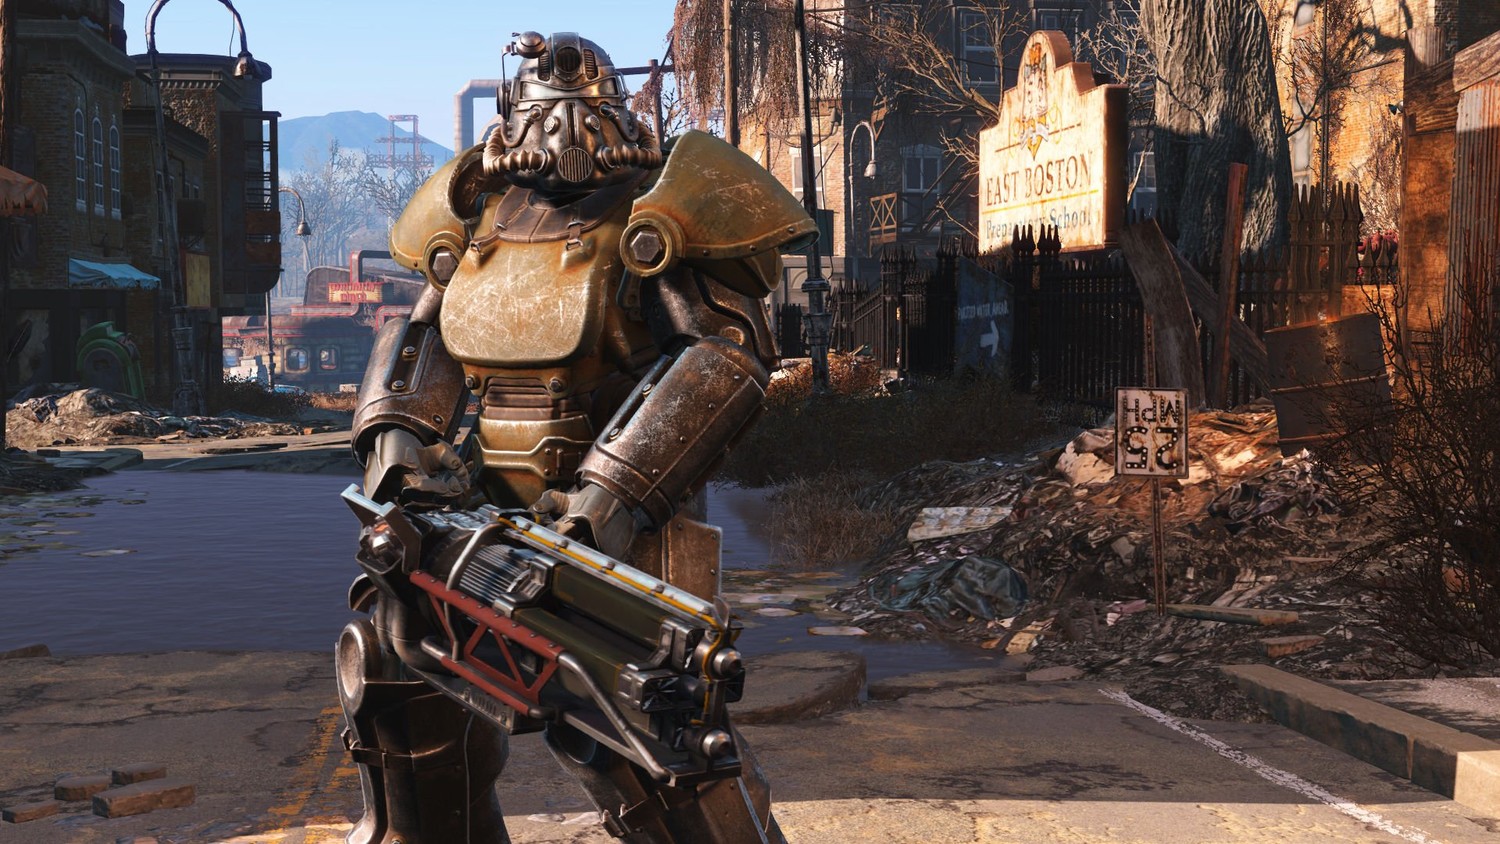 Скриншот 2 к игре Fallout 4 [v 1.10.162.0.1. + 7 DLC] (2015) PC | RePack от xatab